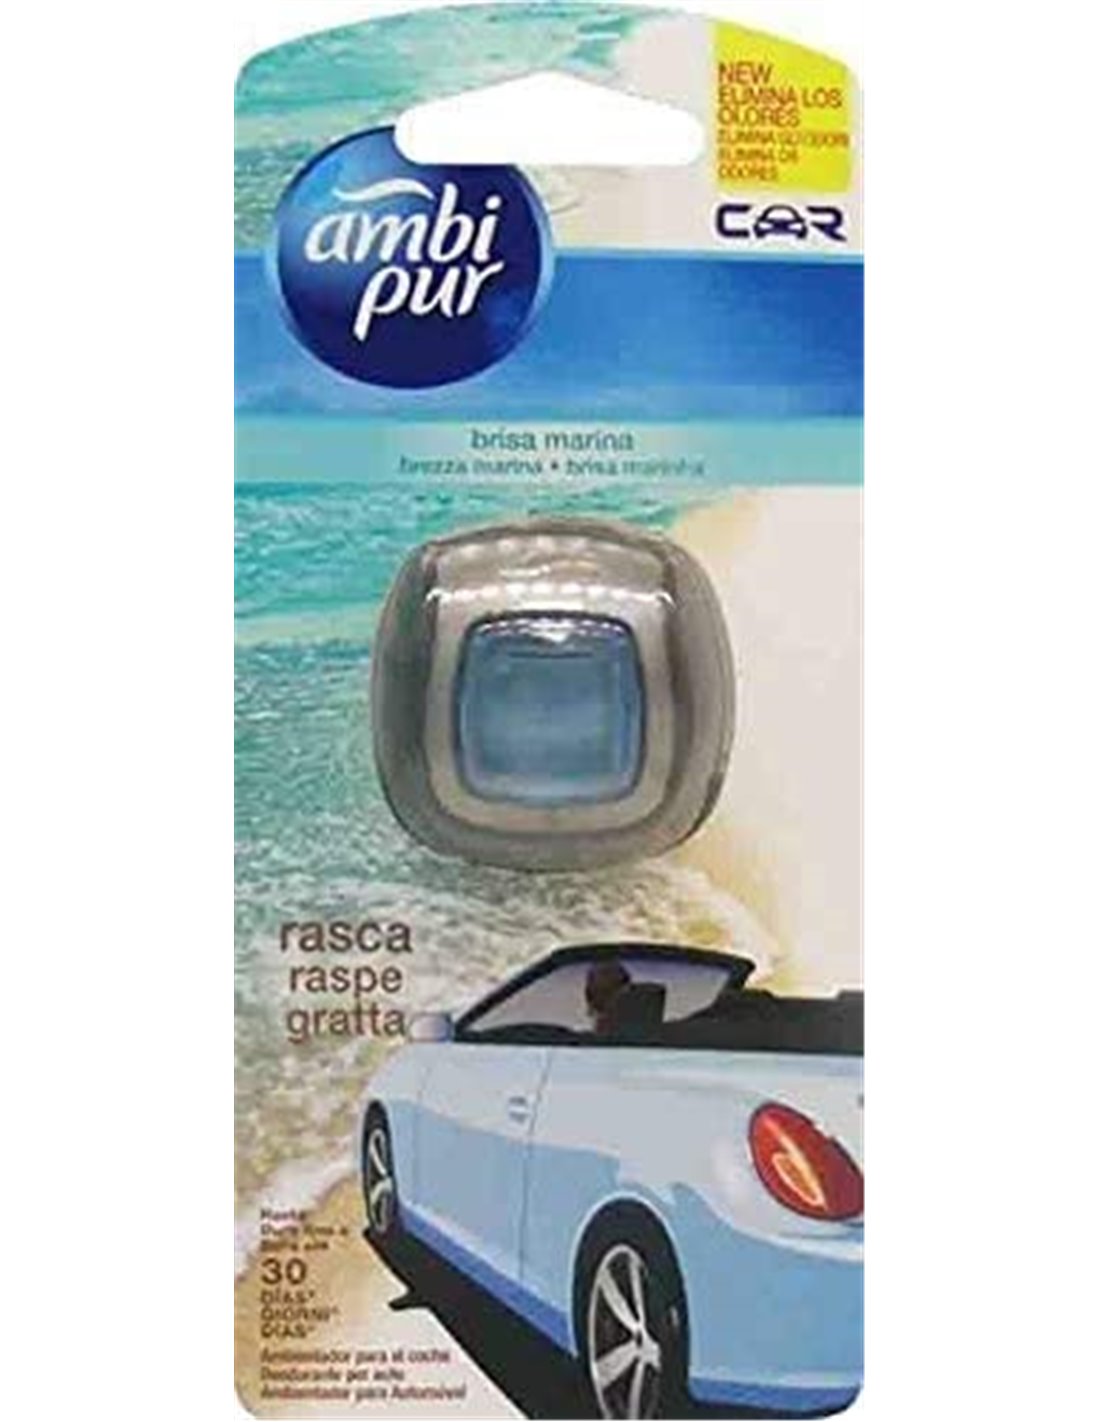 Ambi Pur 4 pz Car Brezza Marina Deodorante per Auto con Clip, [ Totale 4  Confezioni Deodoranti Auto ]